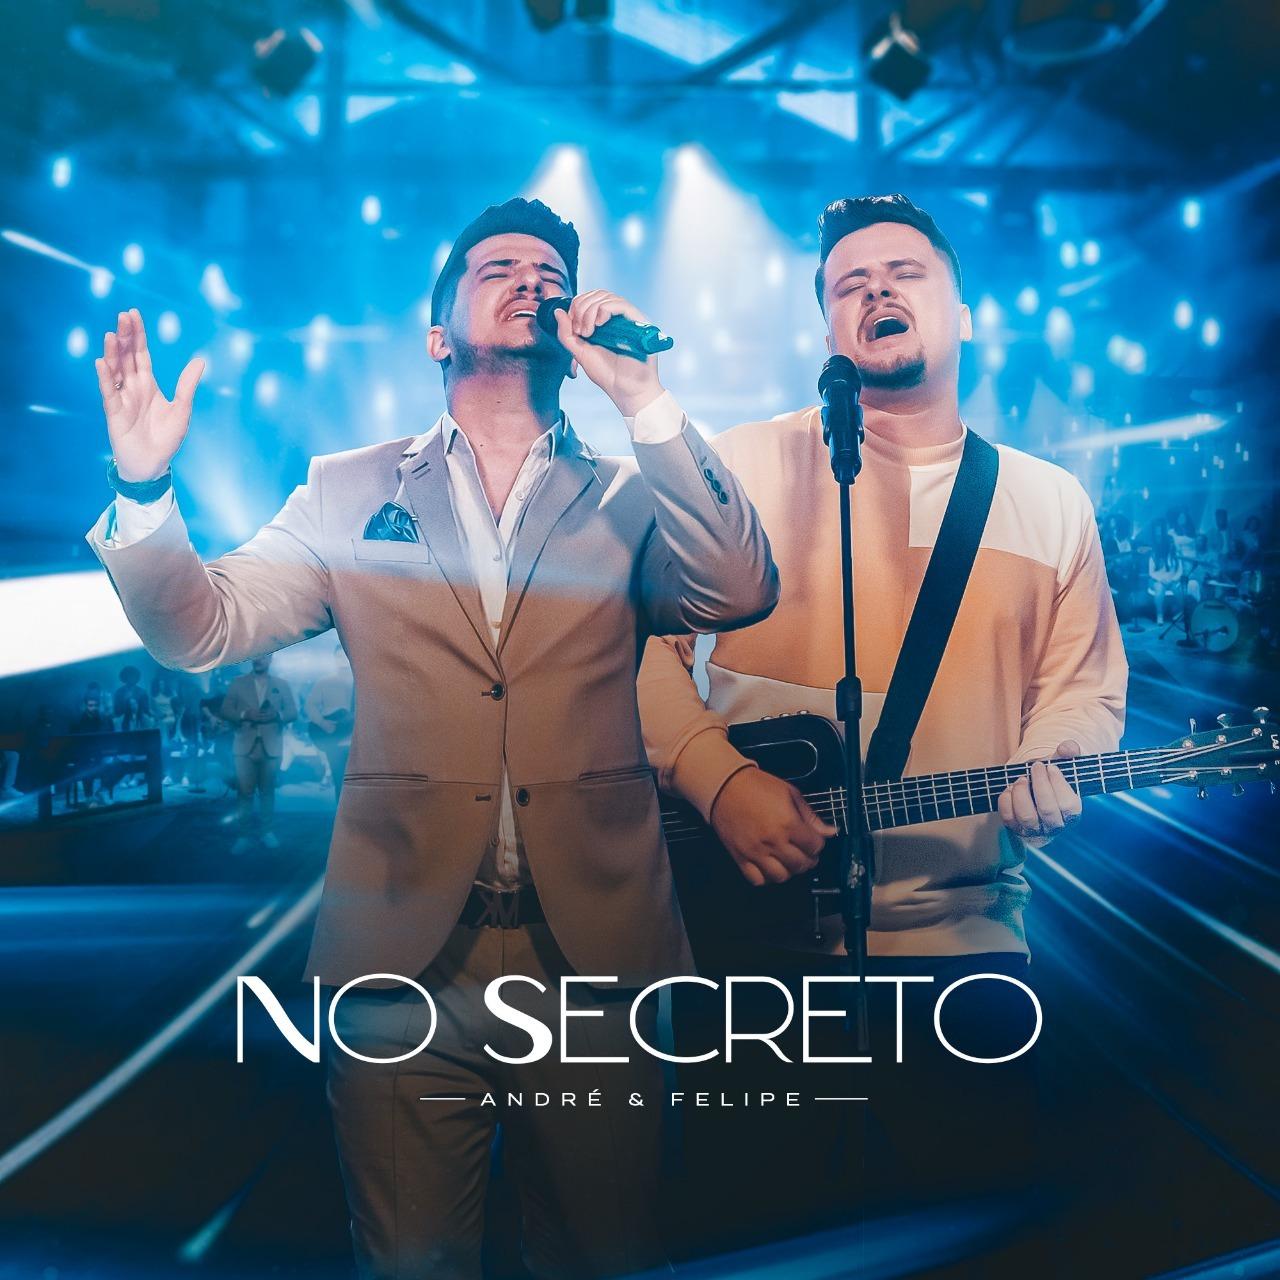 André e Felipe lançam EP “No Secreto”, com canção inédita de mesmo nome